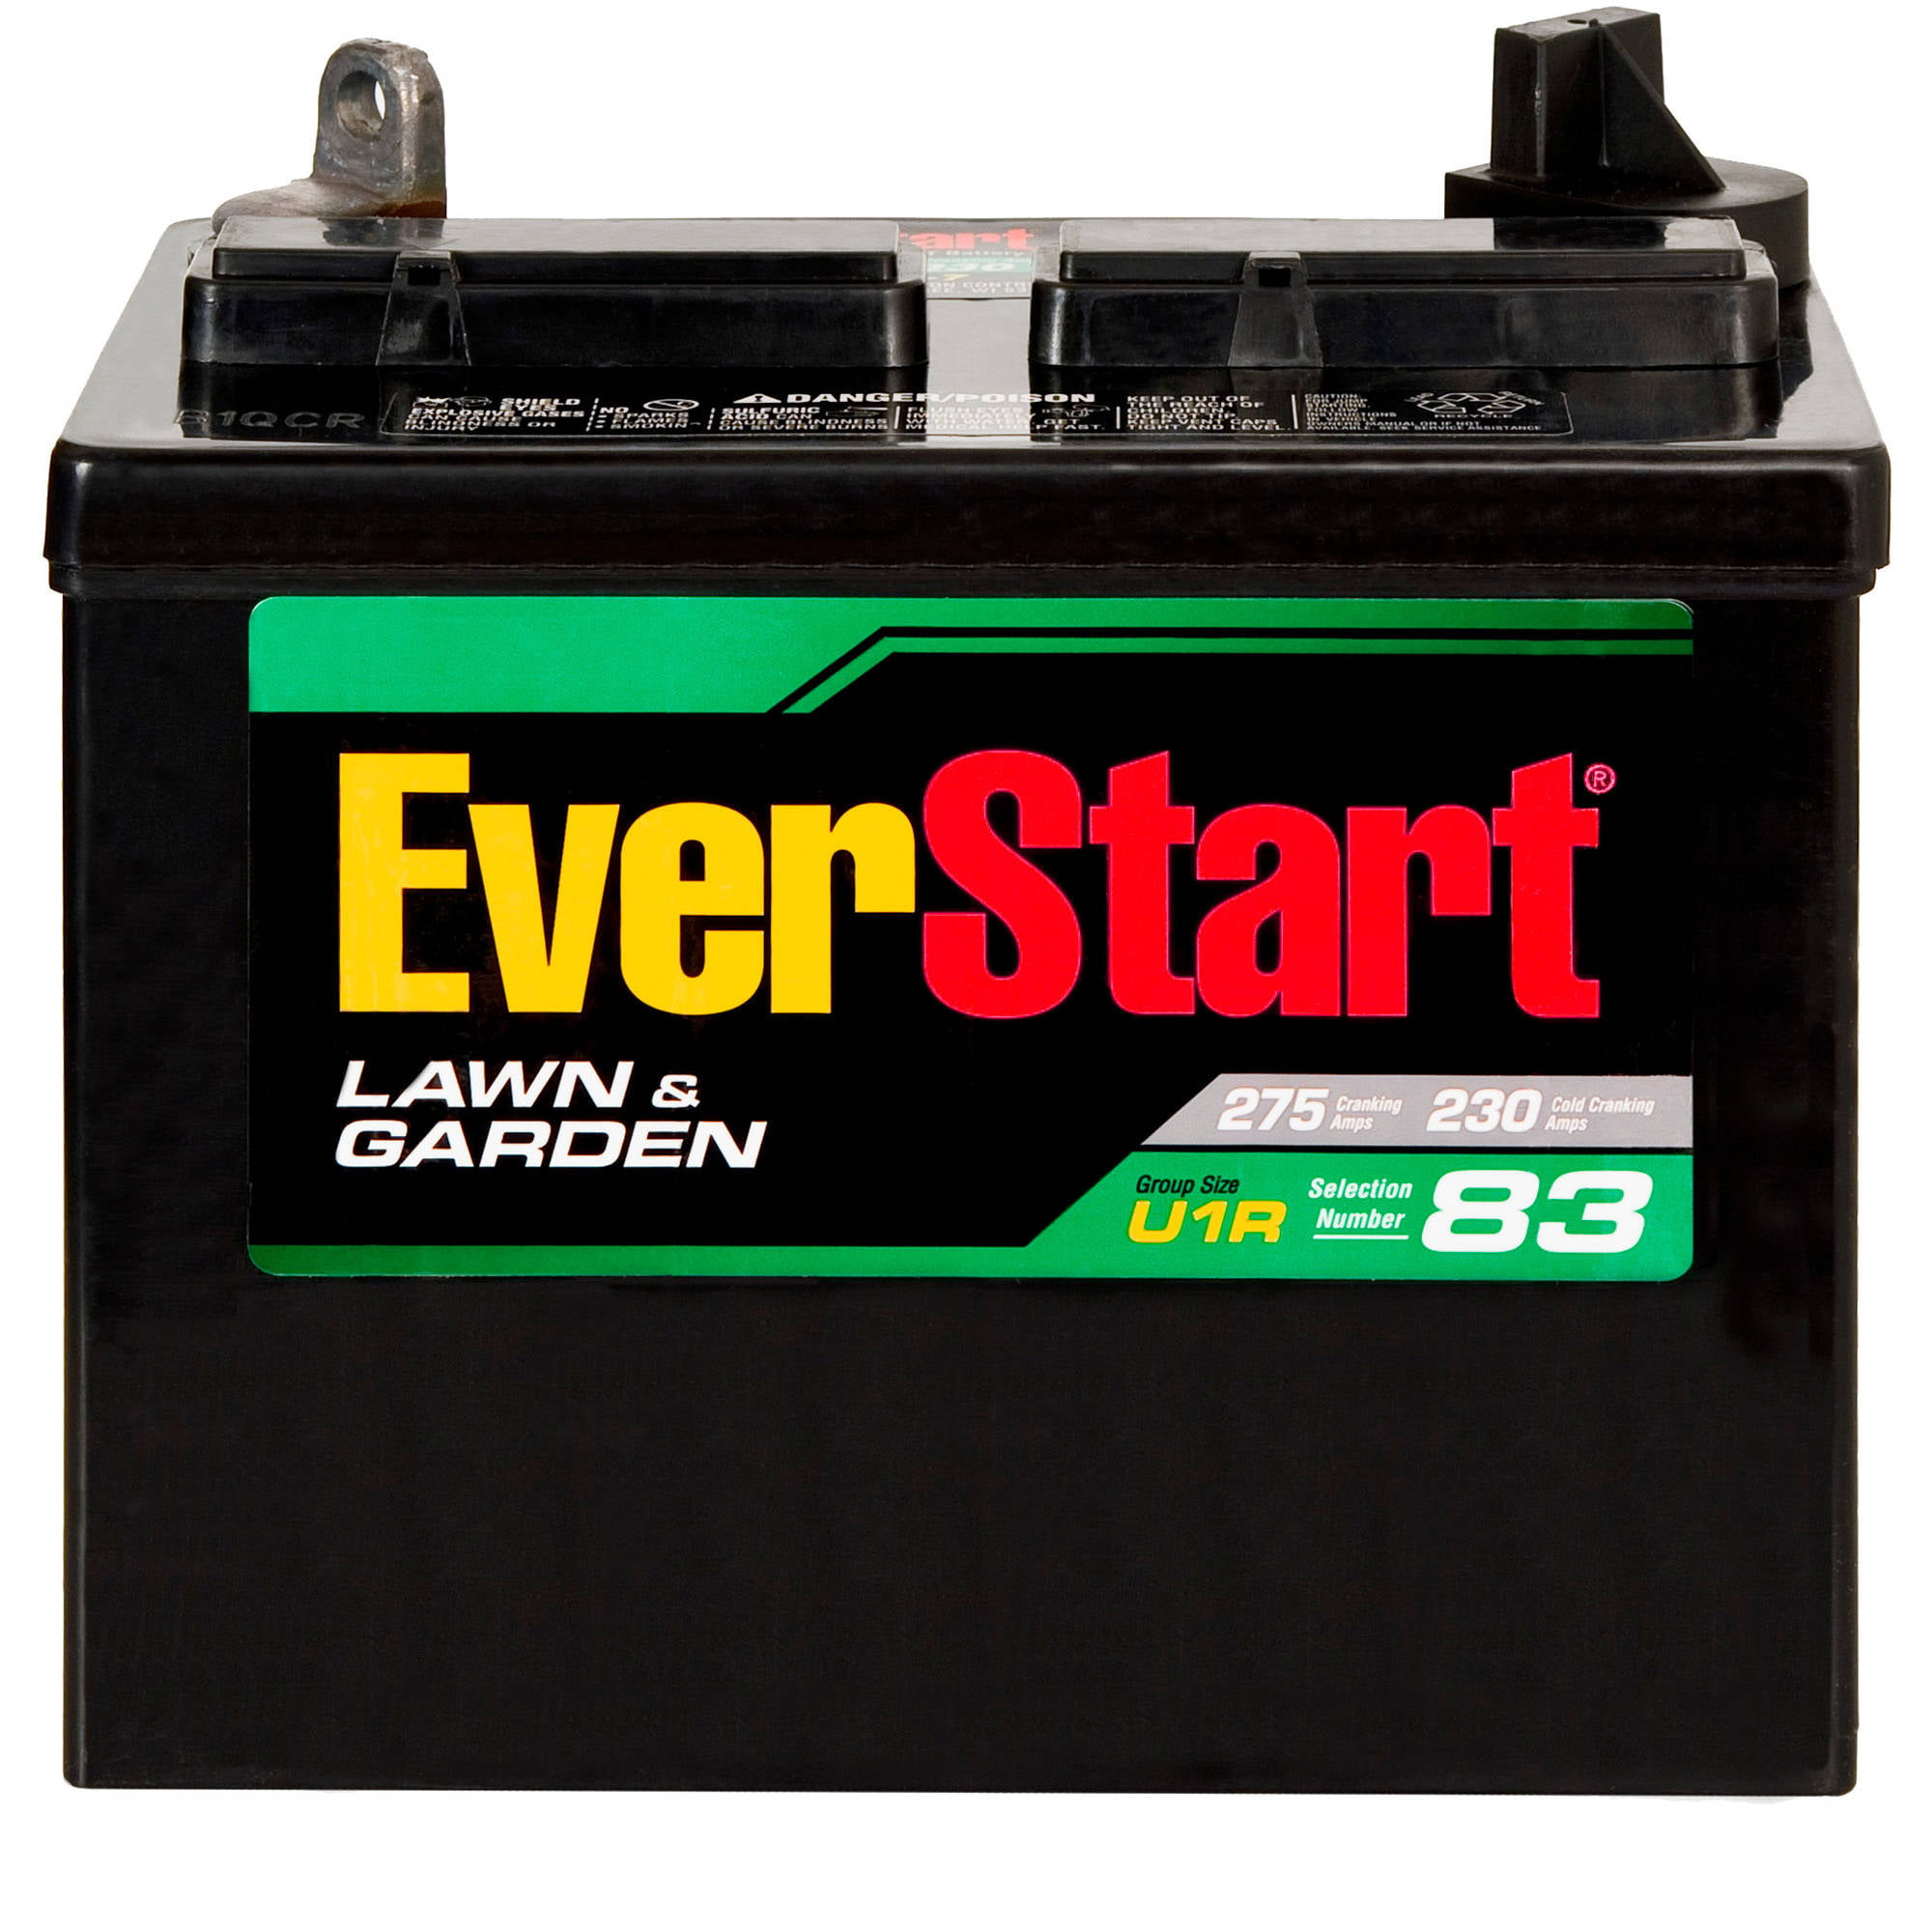 everstart-lawn-garden-battery-u1r-walmart